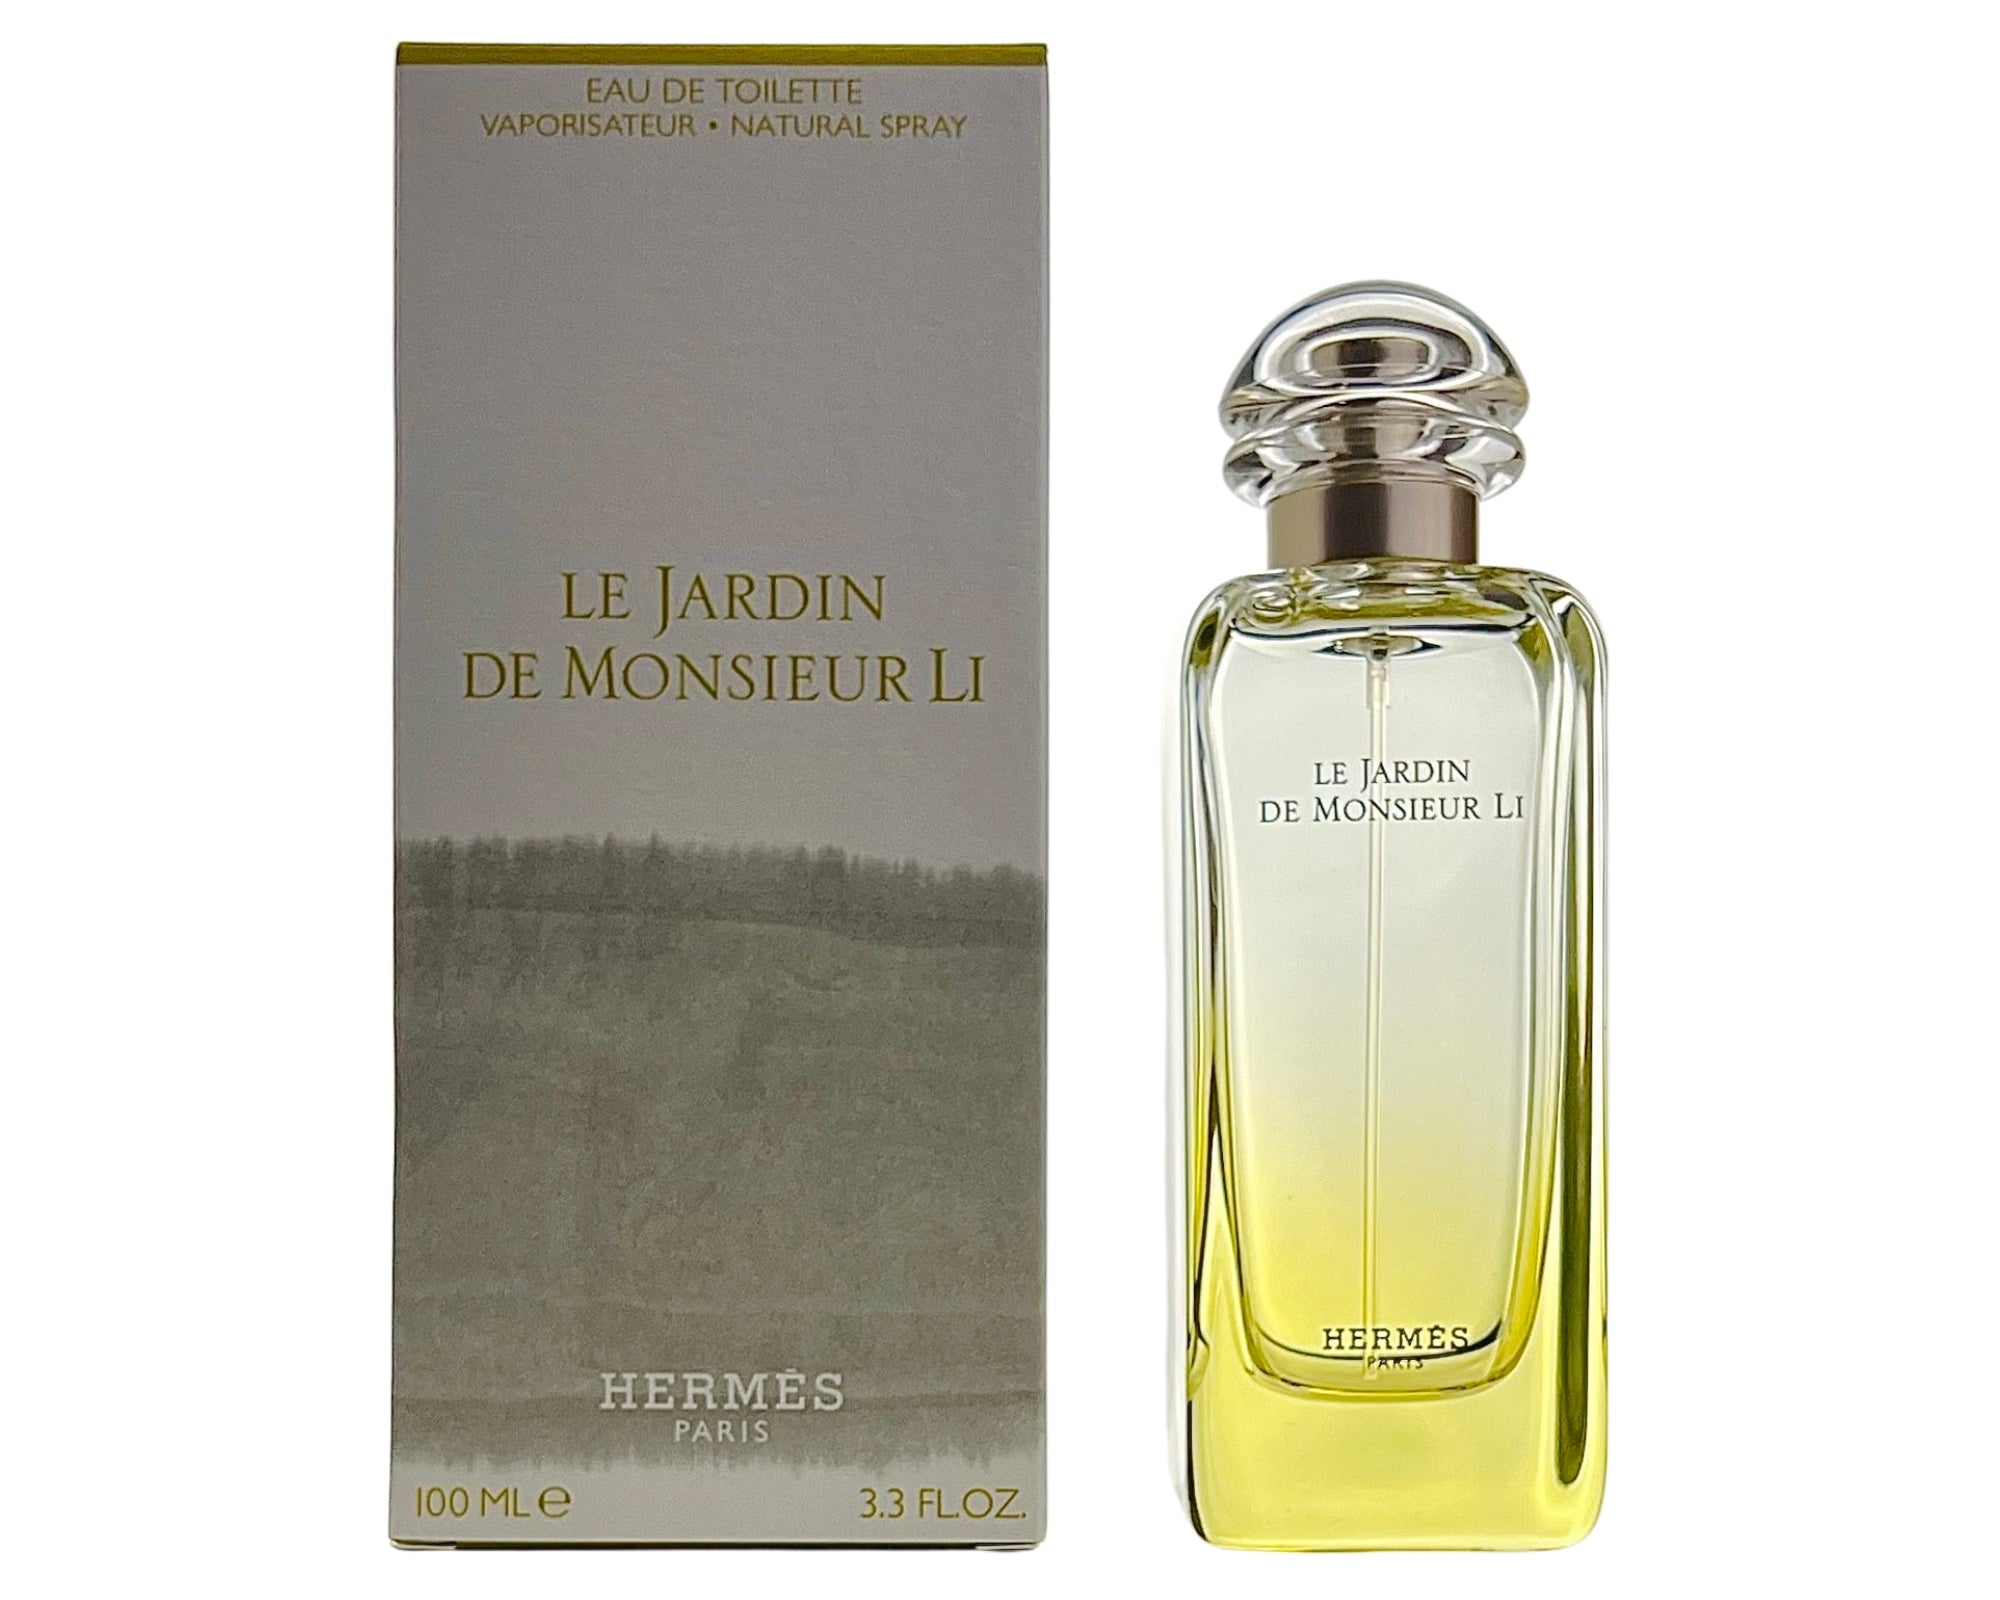 Li Le Eau De Toilette De by Monsieur Hermes Jardin Perfume